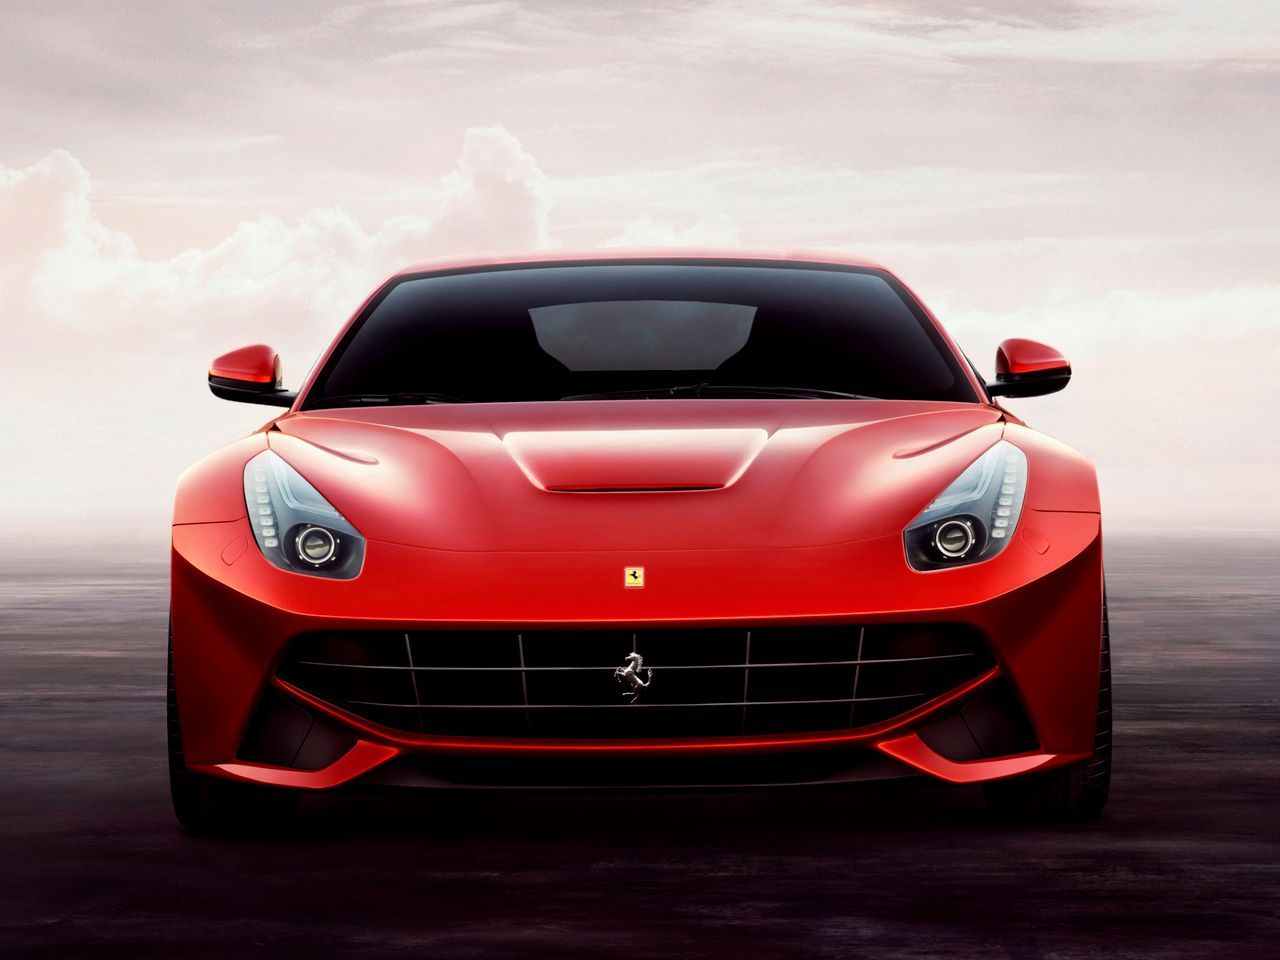 W Ferrari, podobnie jak w Astonie Martinie pracuje wolnossące V12. Włoska jednostka ma pojemność 6,2 l i generuje aż 740 KM przy 8250 rpm oraz 690 Nm przy 6000 rpm.